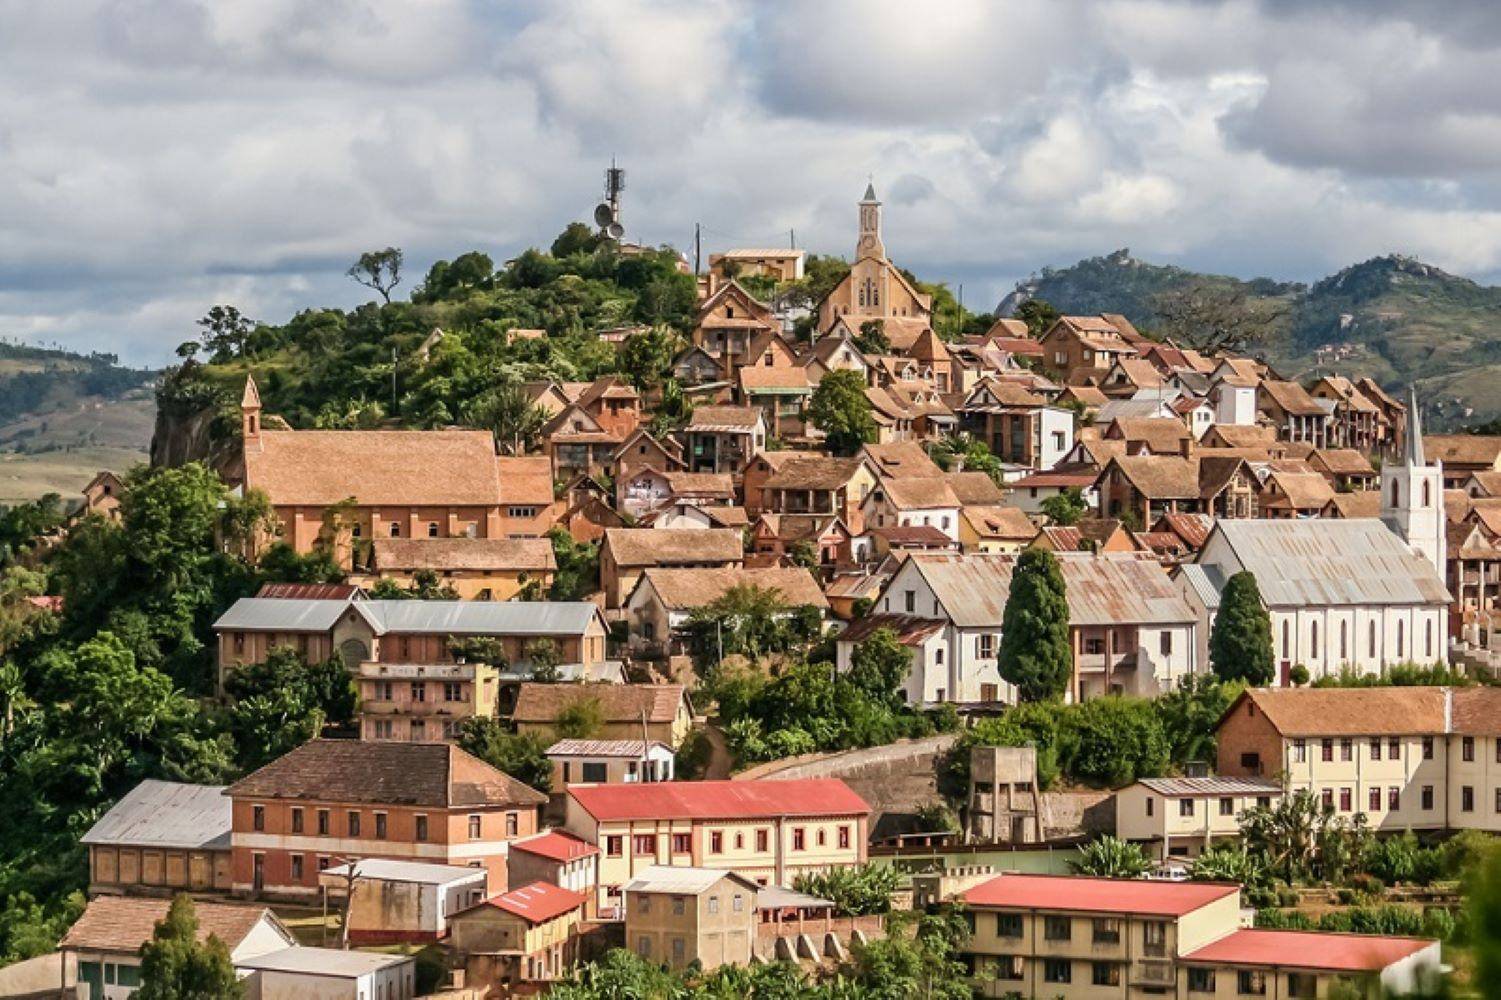 Llegada a Antananarivo y fin del viaje